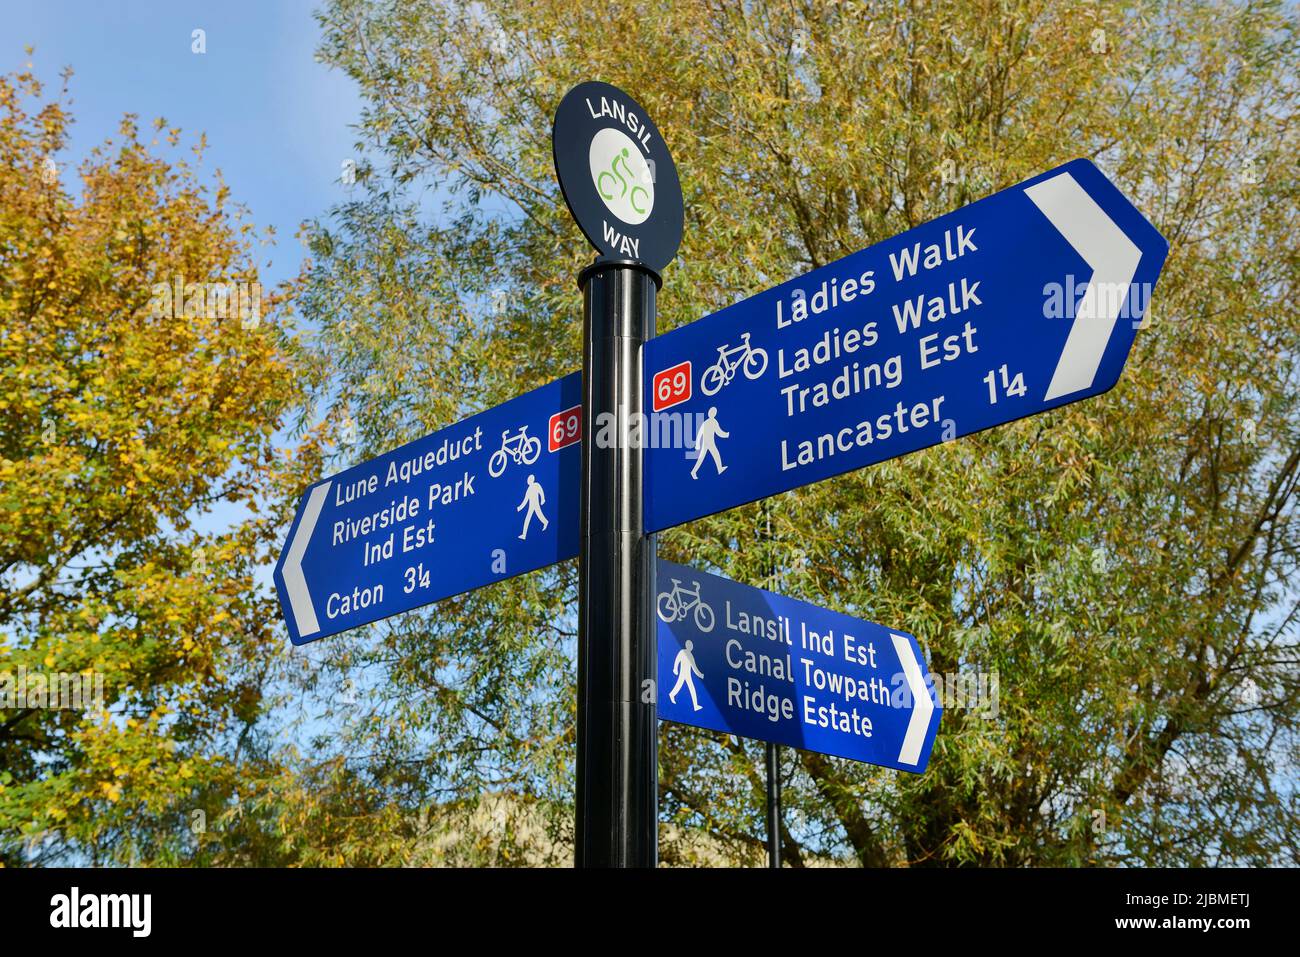 Un cartel en el camino de los lanais que apunta a varias rutas de ciclismo y senderismo en el centro de la ciudad de Lancaster Reino Unido Foto de stock